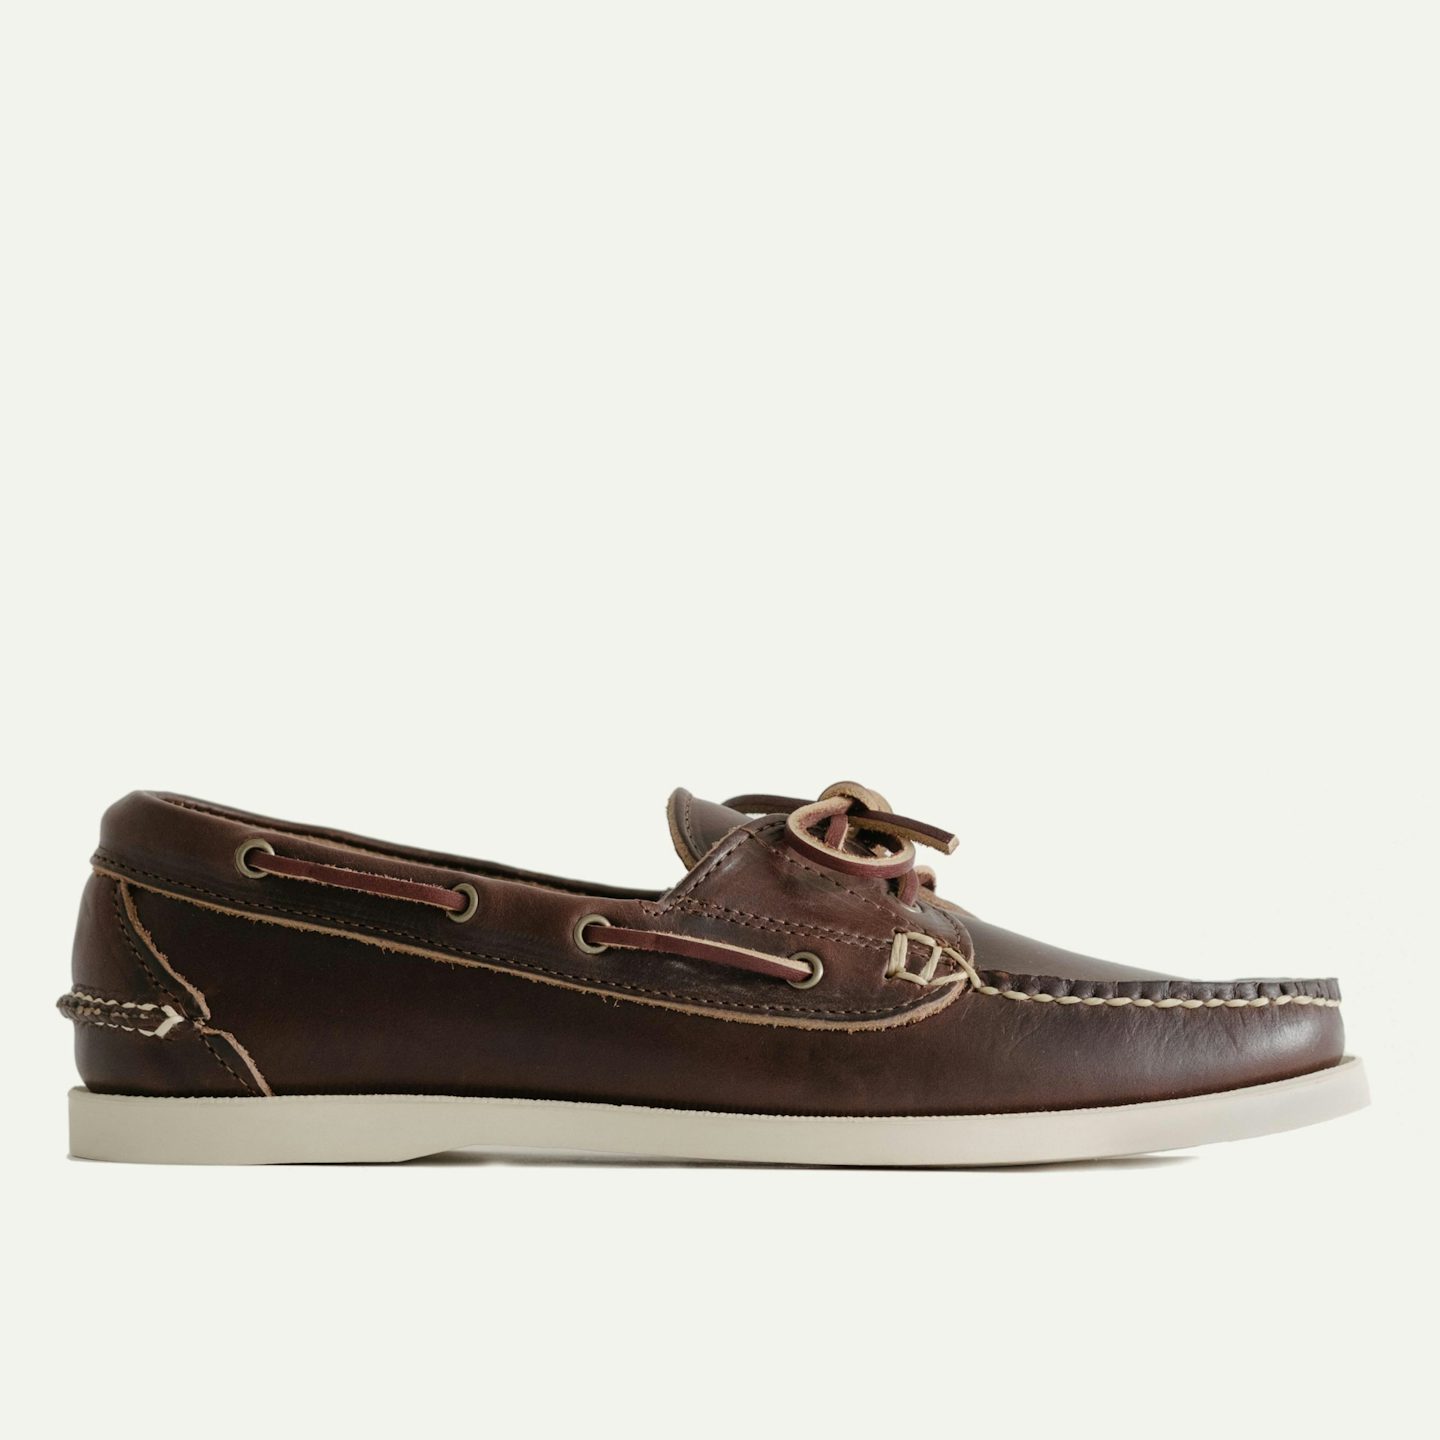 oak street boat shoes